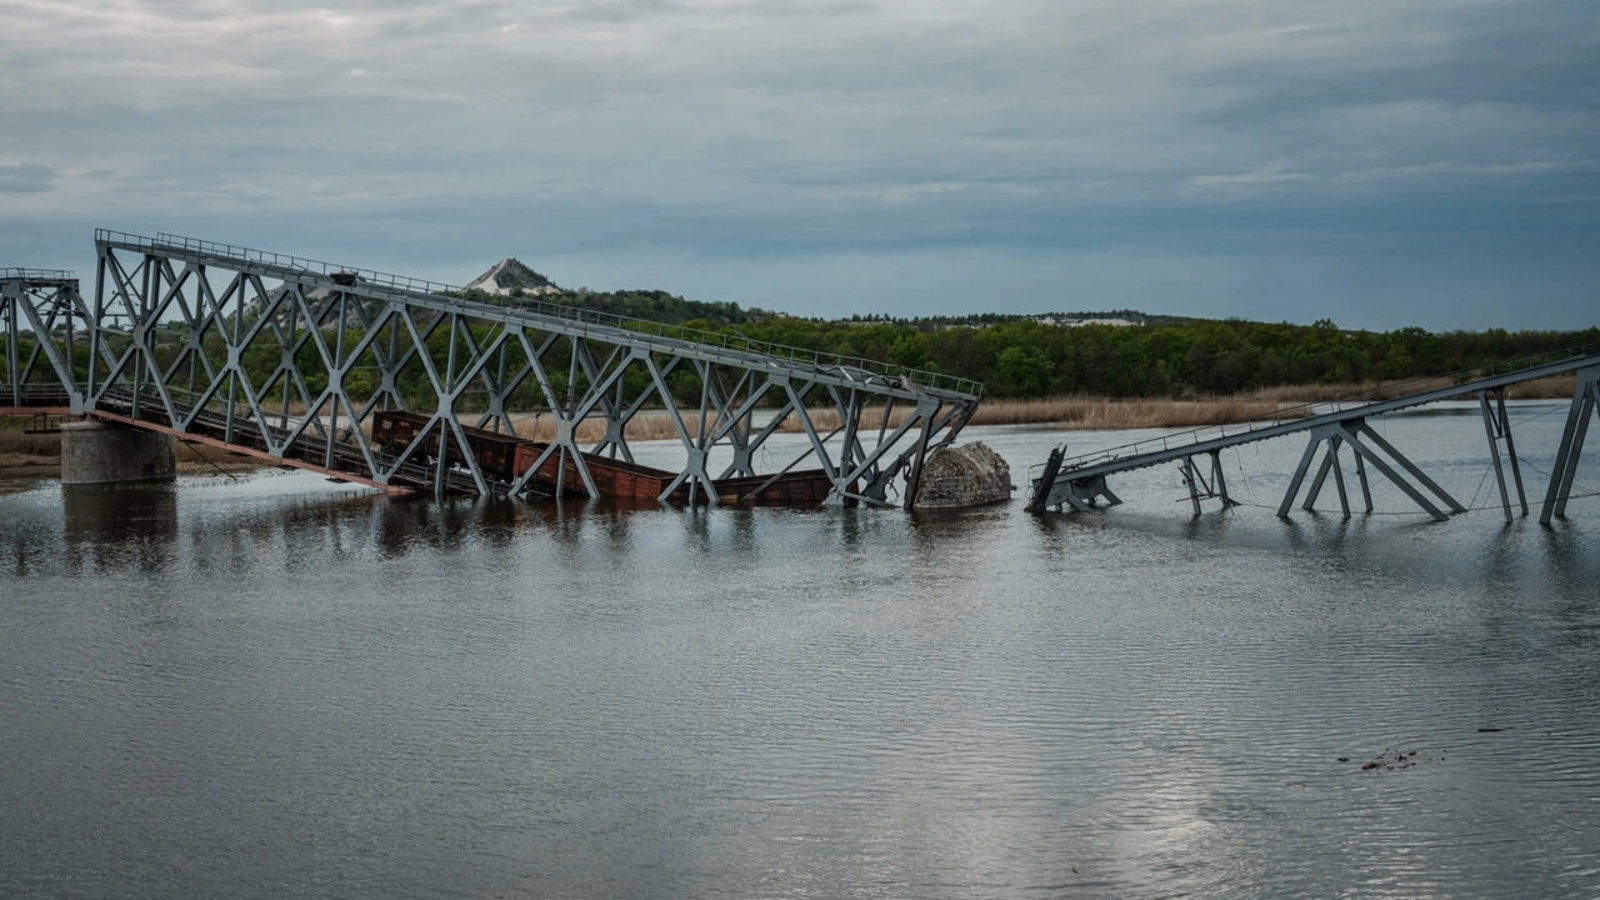 جسر مدمّر في رايغورودوك في شرق أوكرانيا في 29 أبريل 2022 